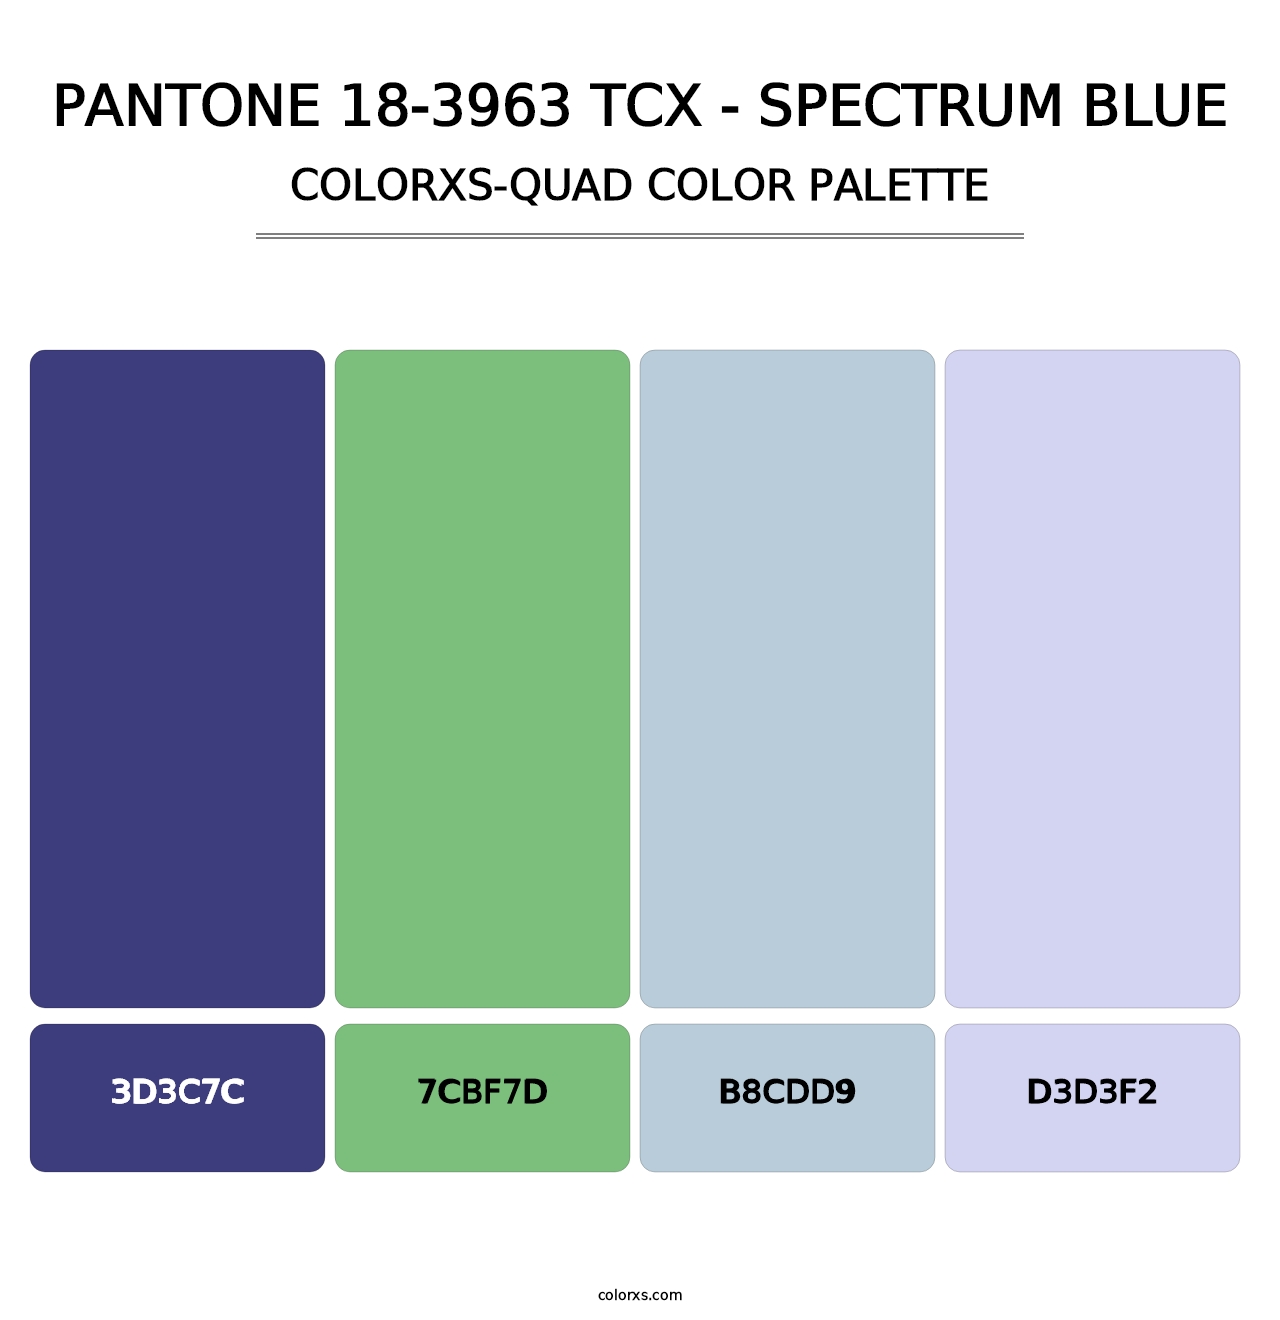 PANTONE 18-3963 TCX - Spectrum Blue - Colorxs Quad Palette